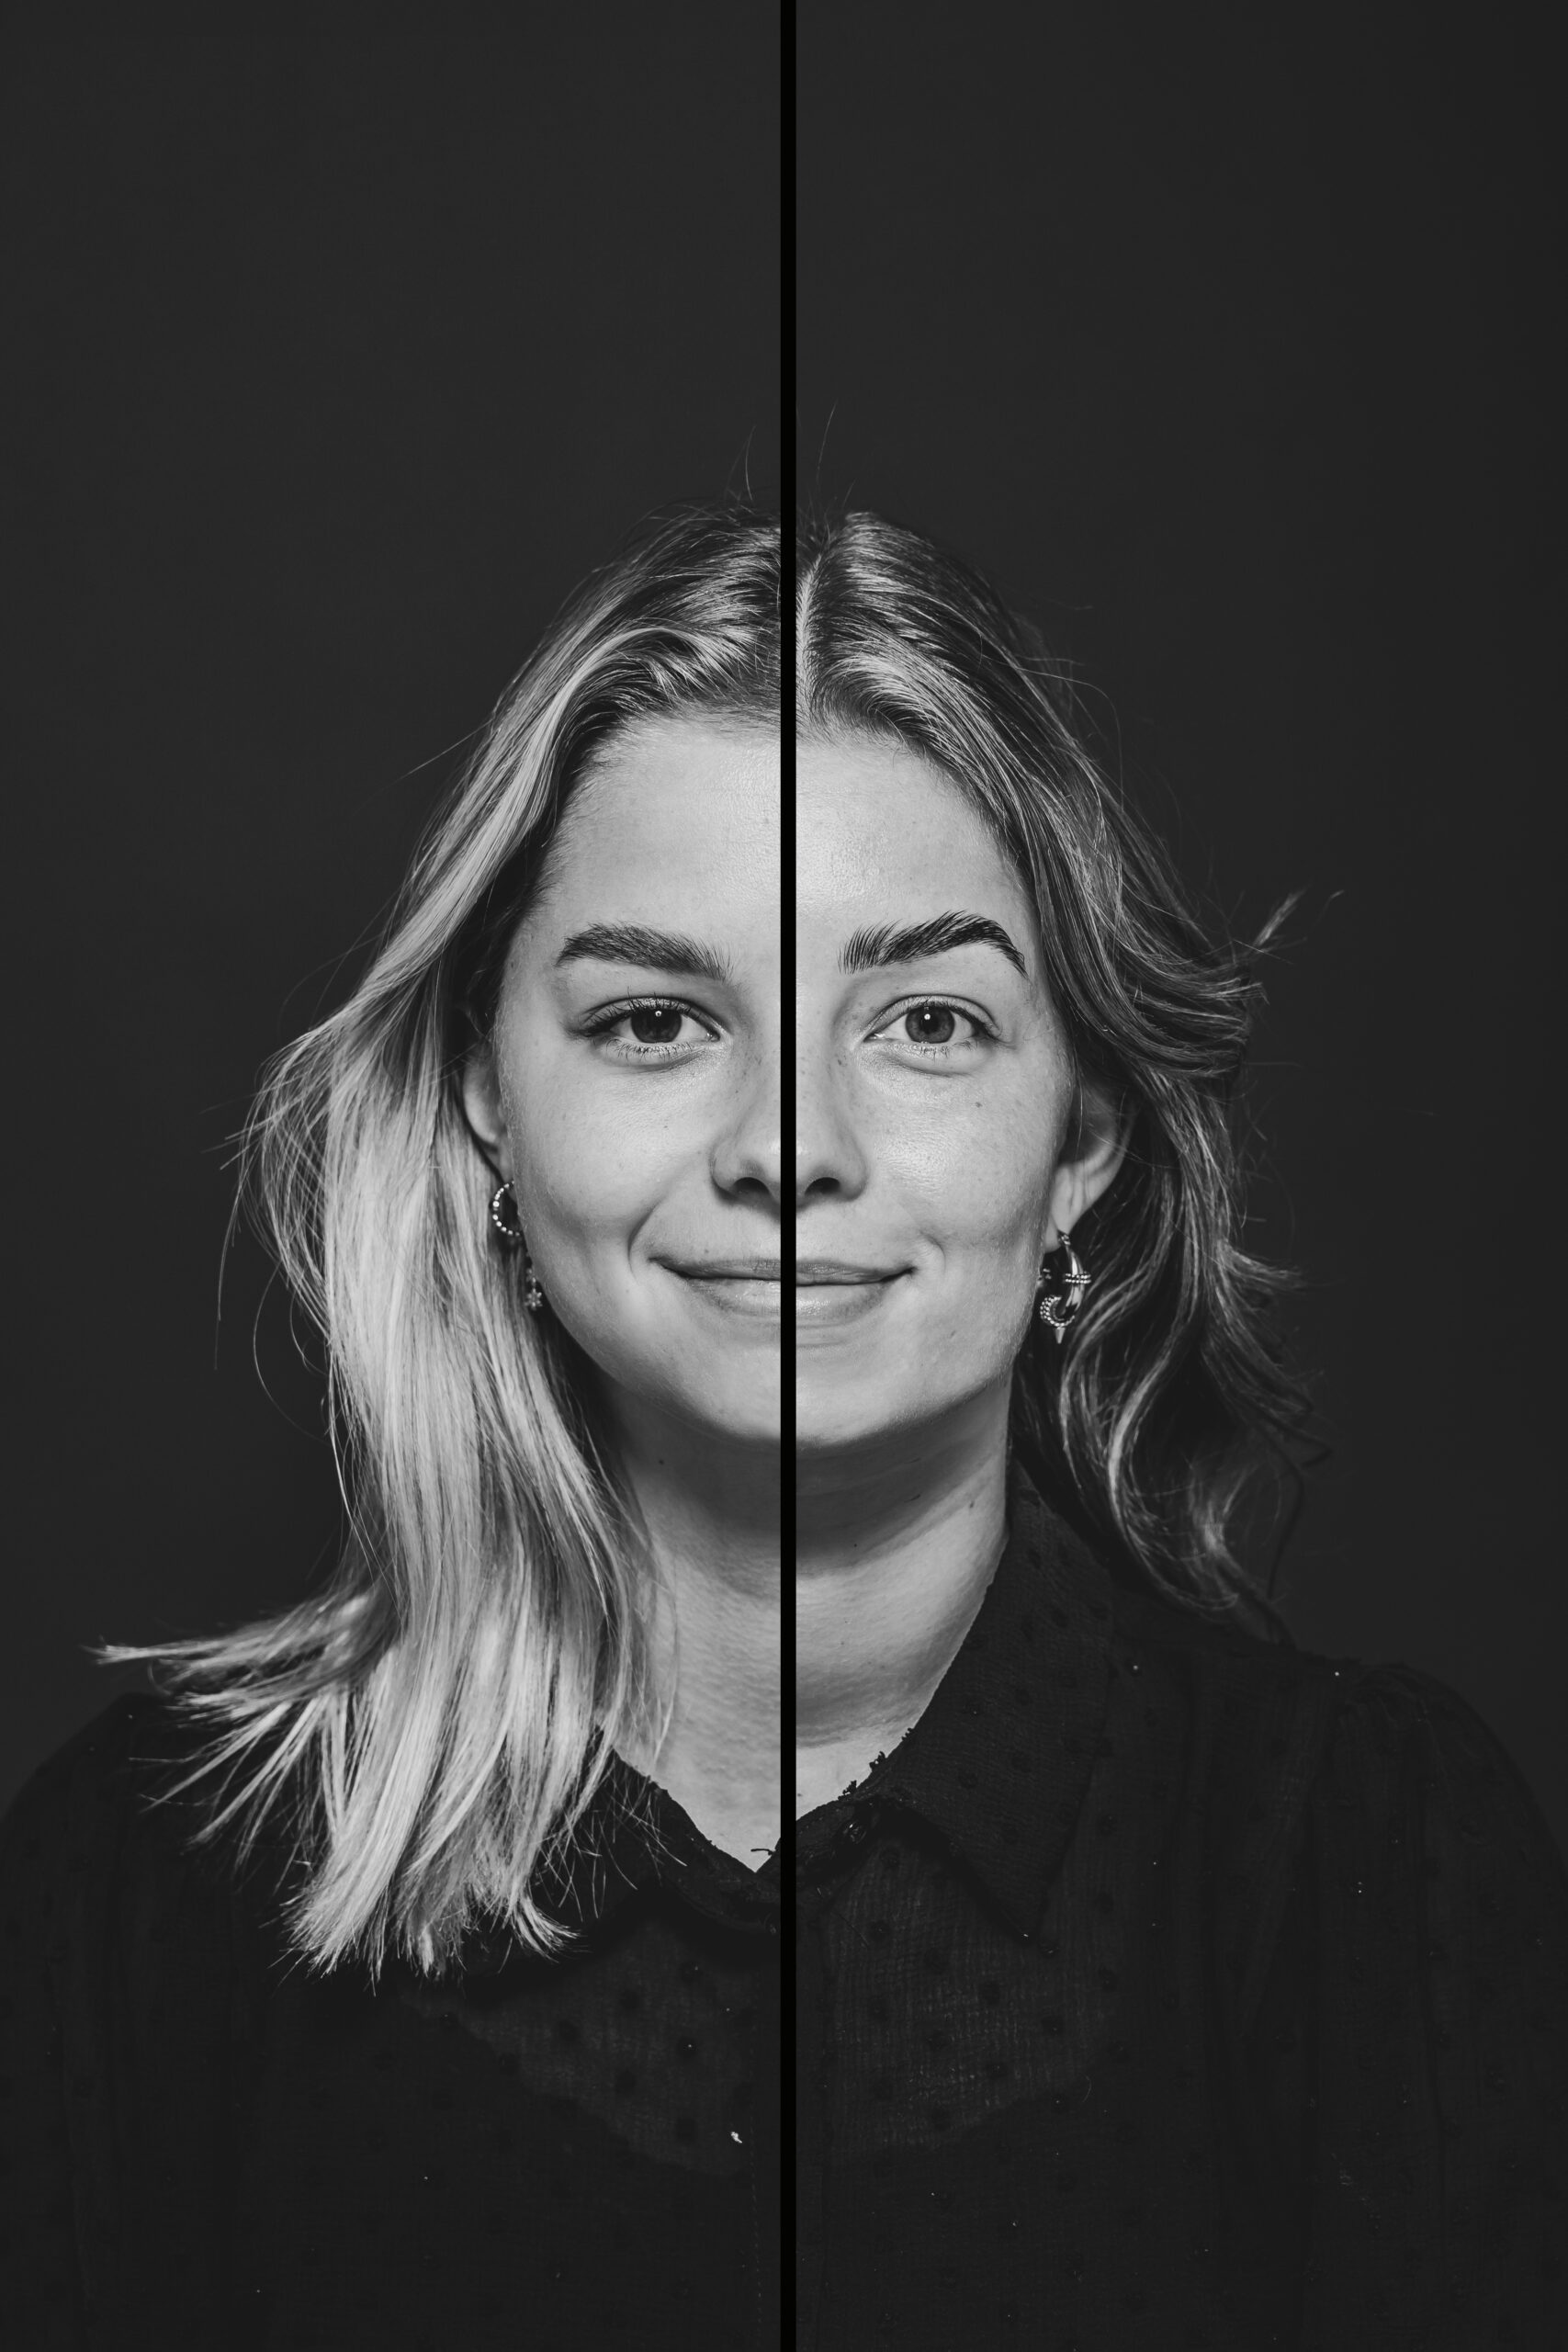 Duoportret Friesland van twee zussen. Zwart/wit met streep door fotograaf Nickie Fotografie uit Dokkum.